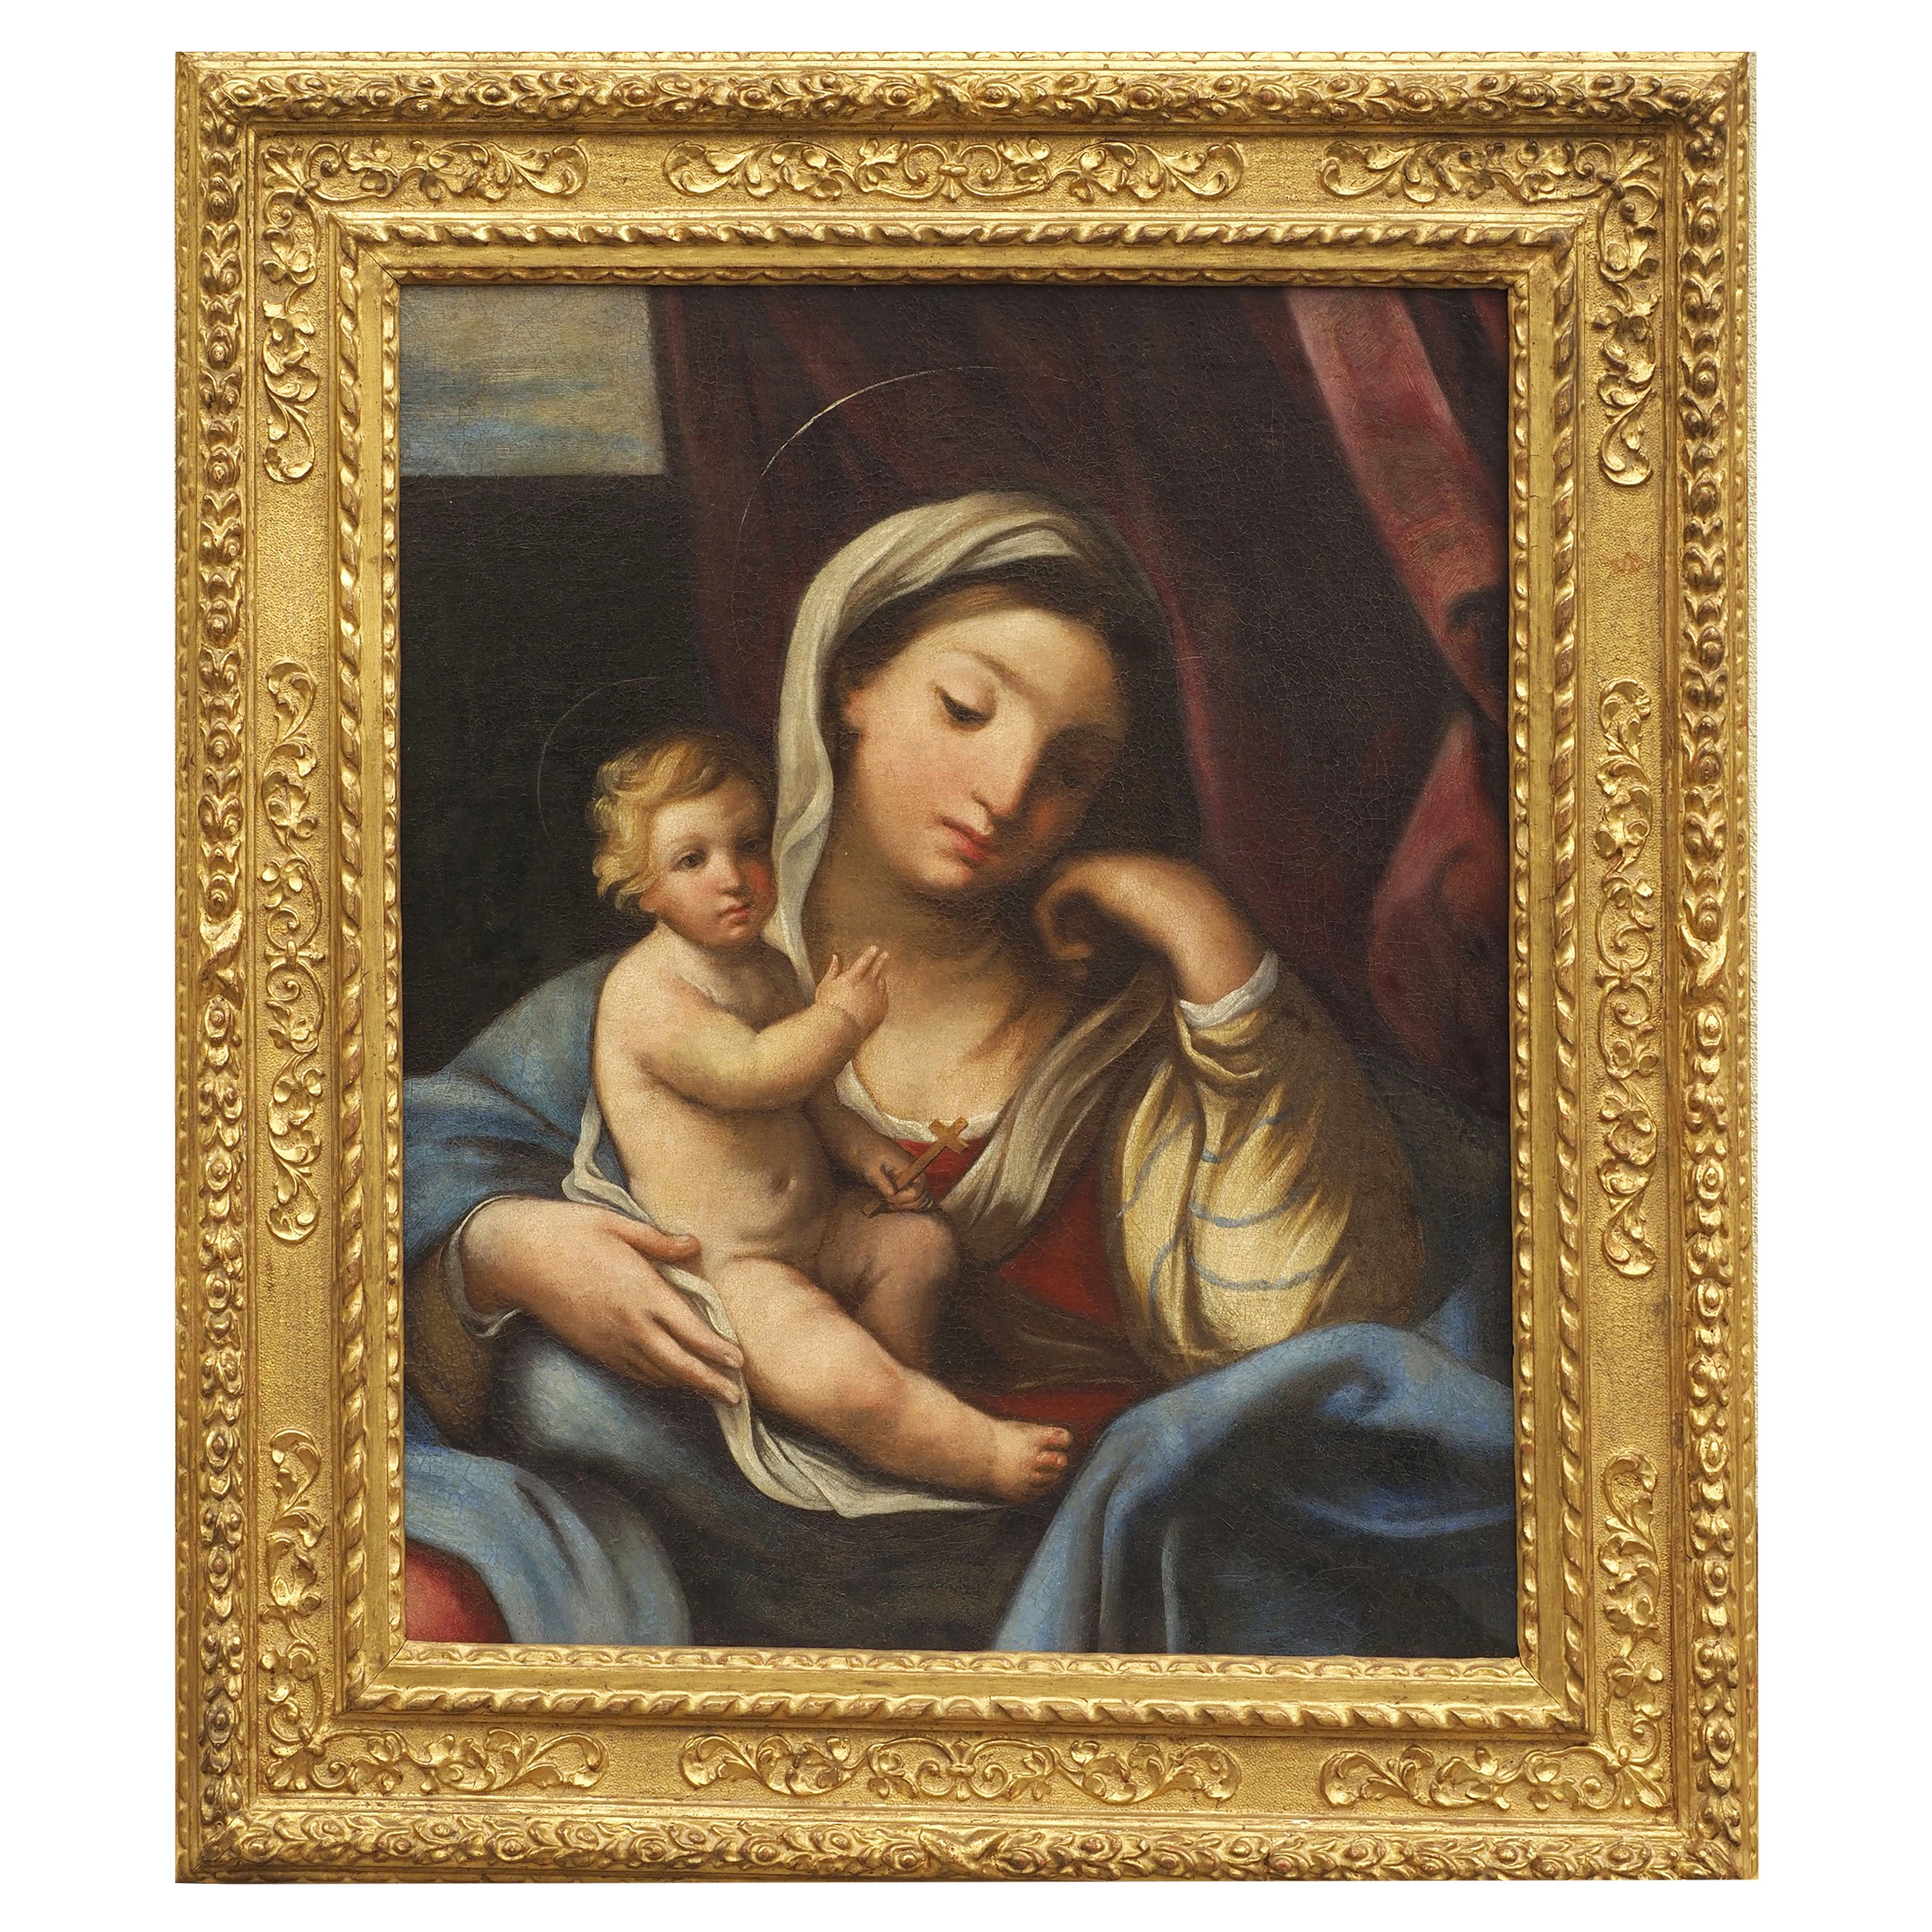 Escuela romana de pintura italiana Madonna y Niño Principios del siglo XVIII